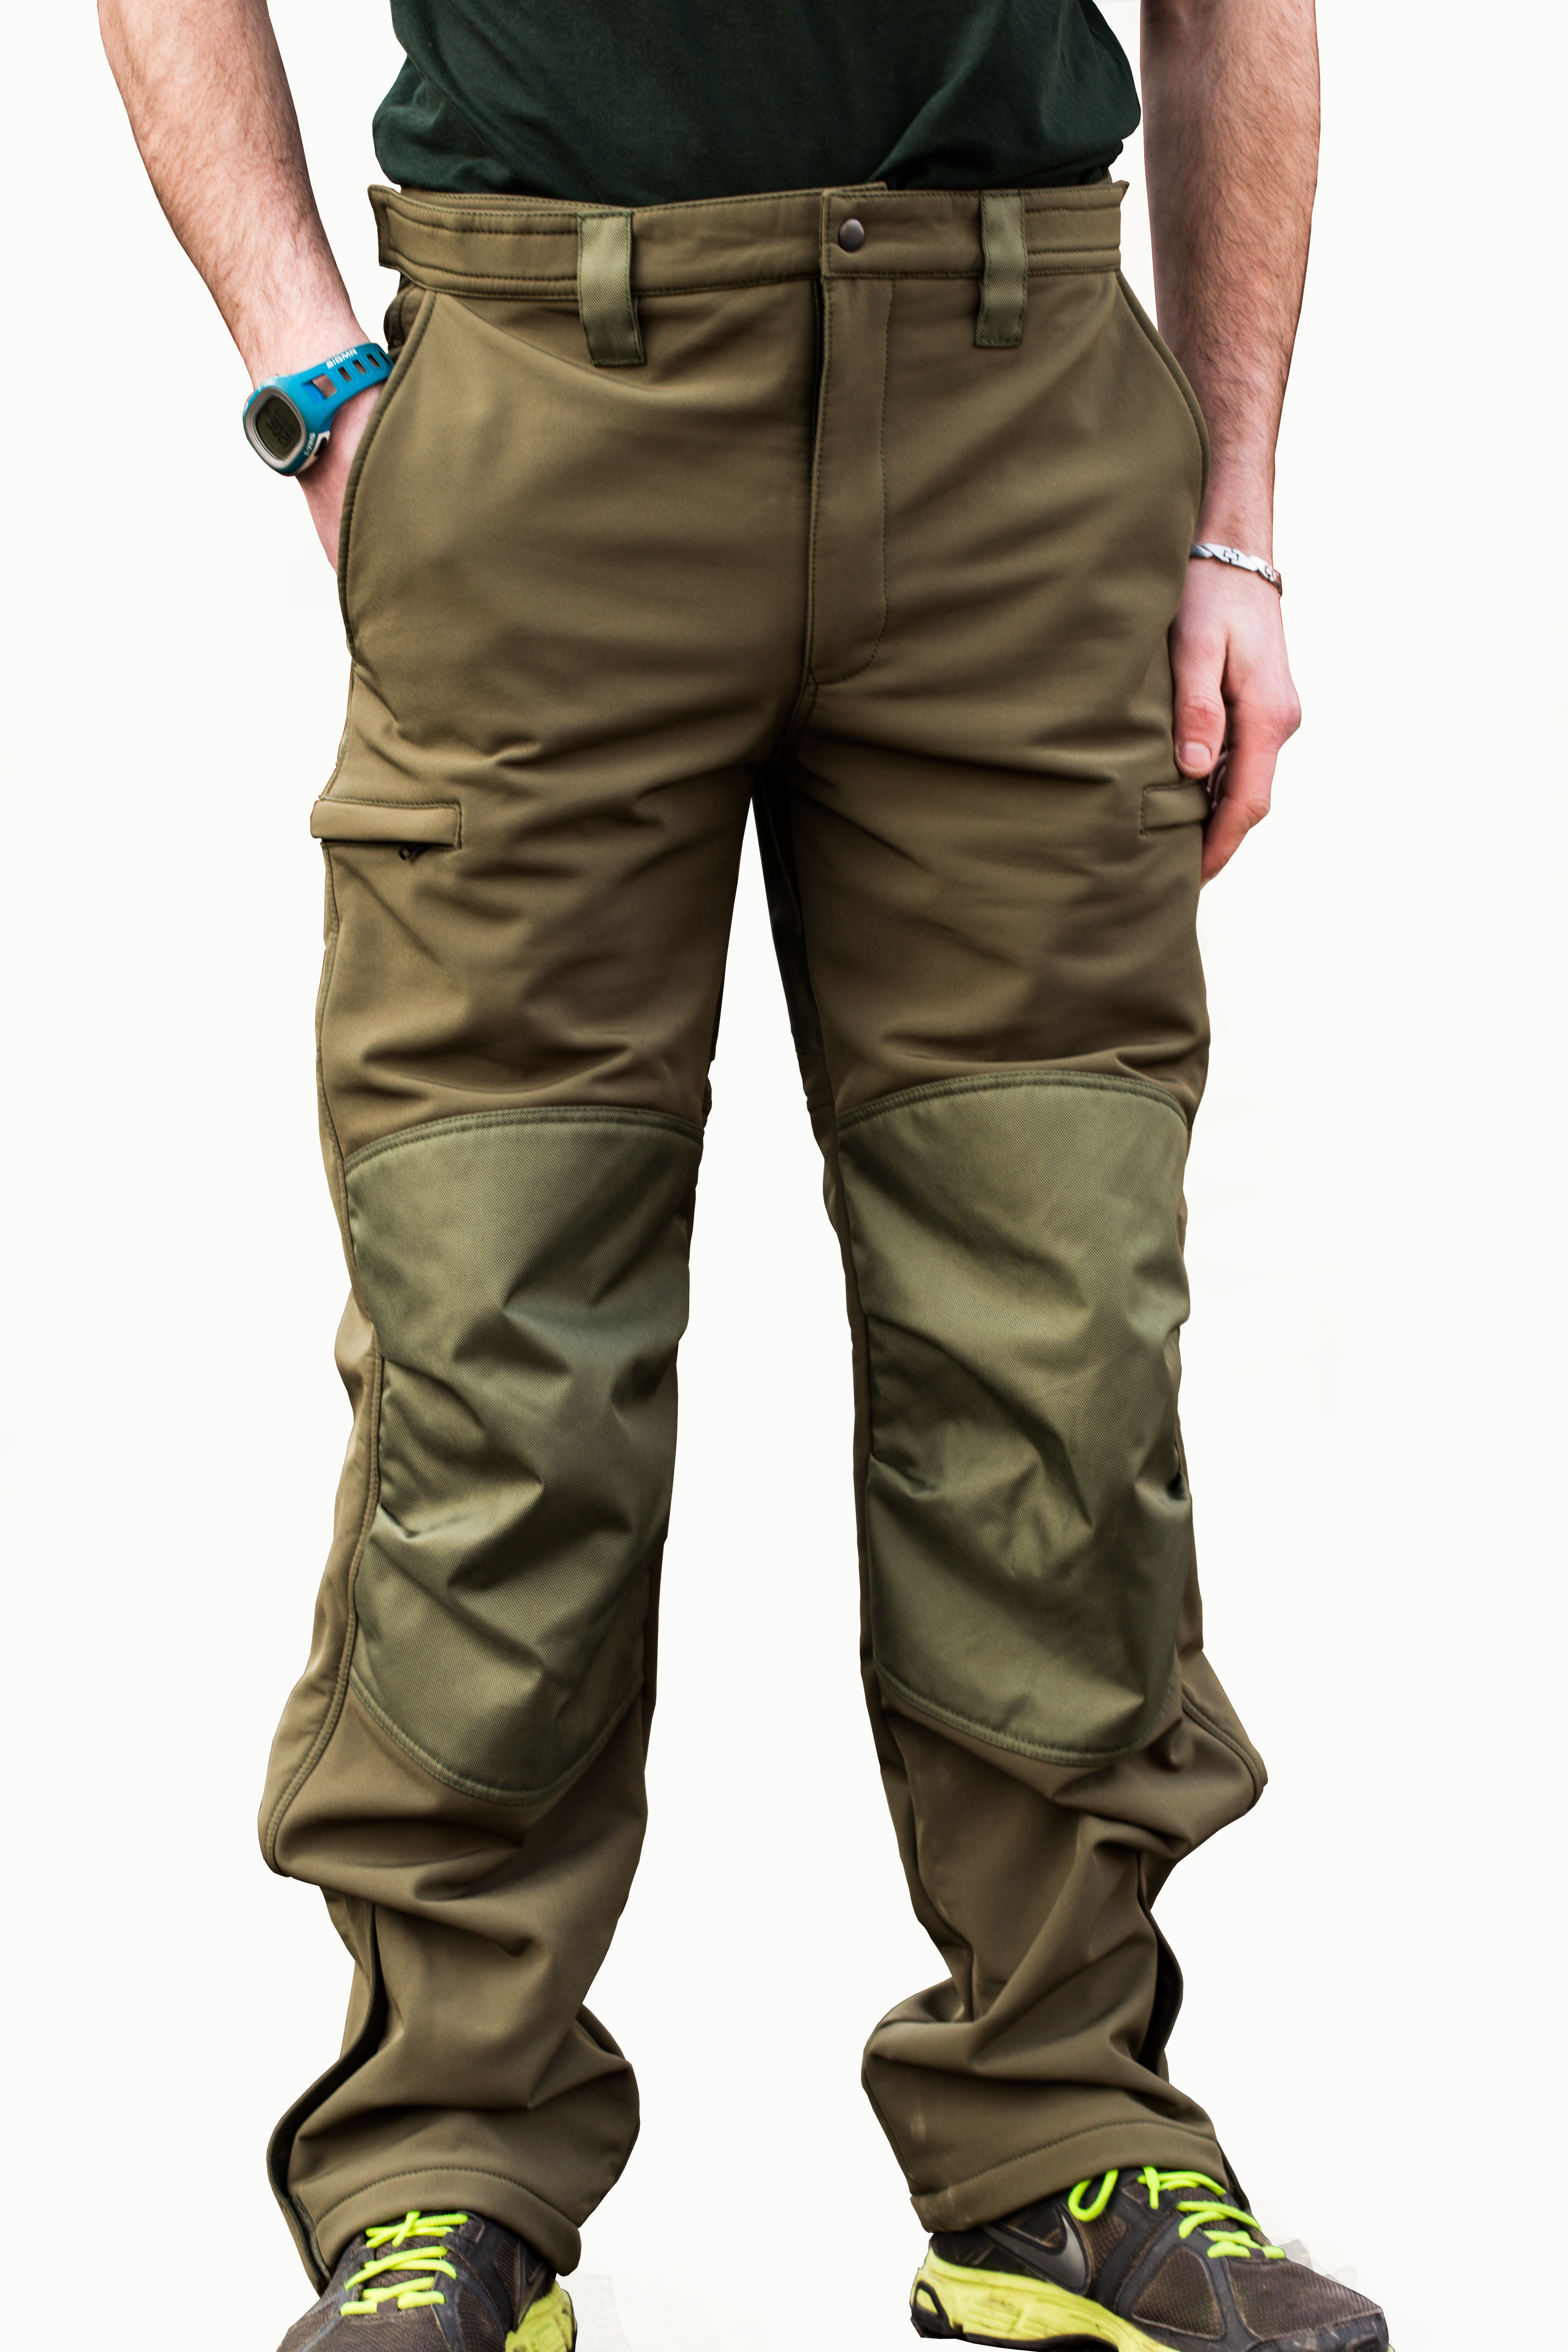 Mikbaits oblečení - Nepromokavé funkční kalhoty Mikbaits STR zelené L